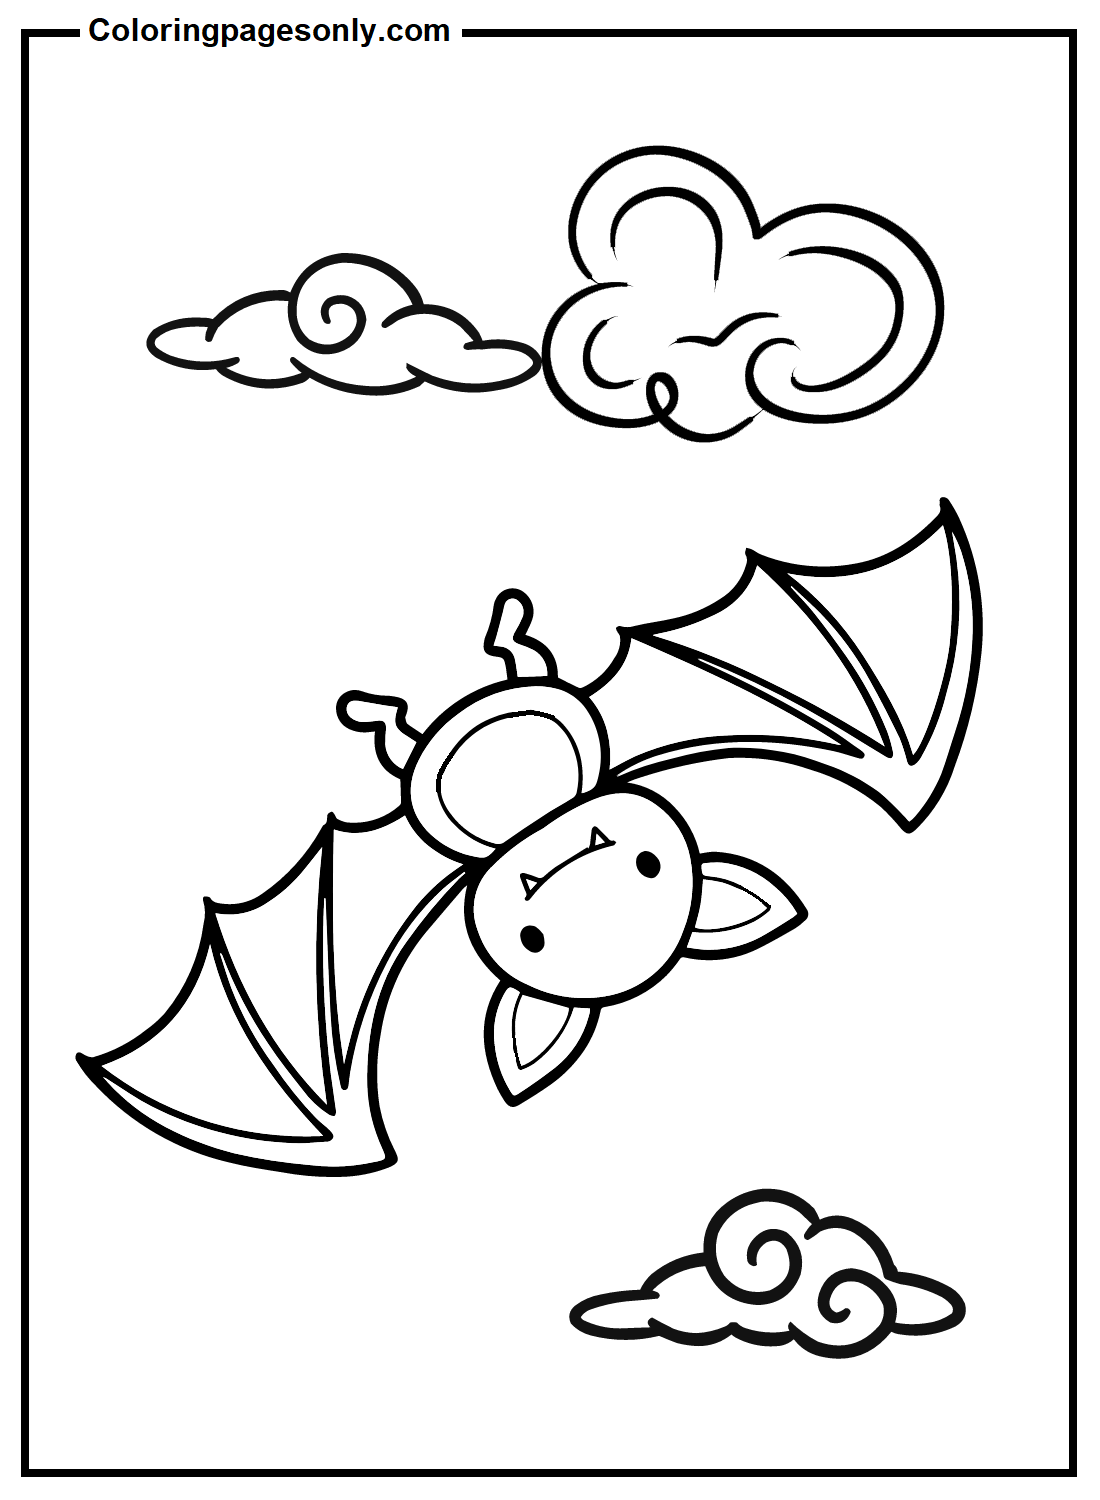 Bat color Sheets Coloring Page